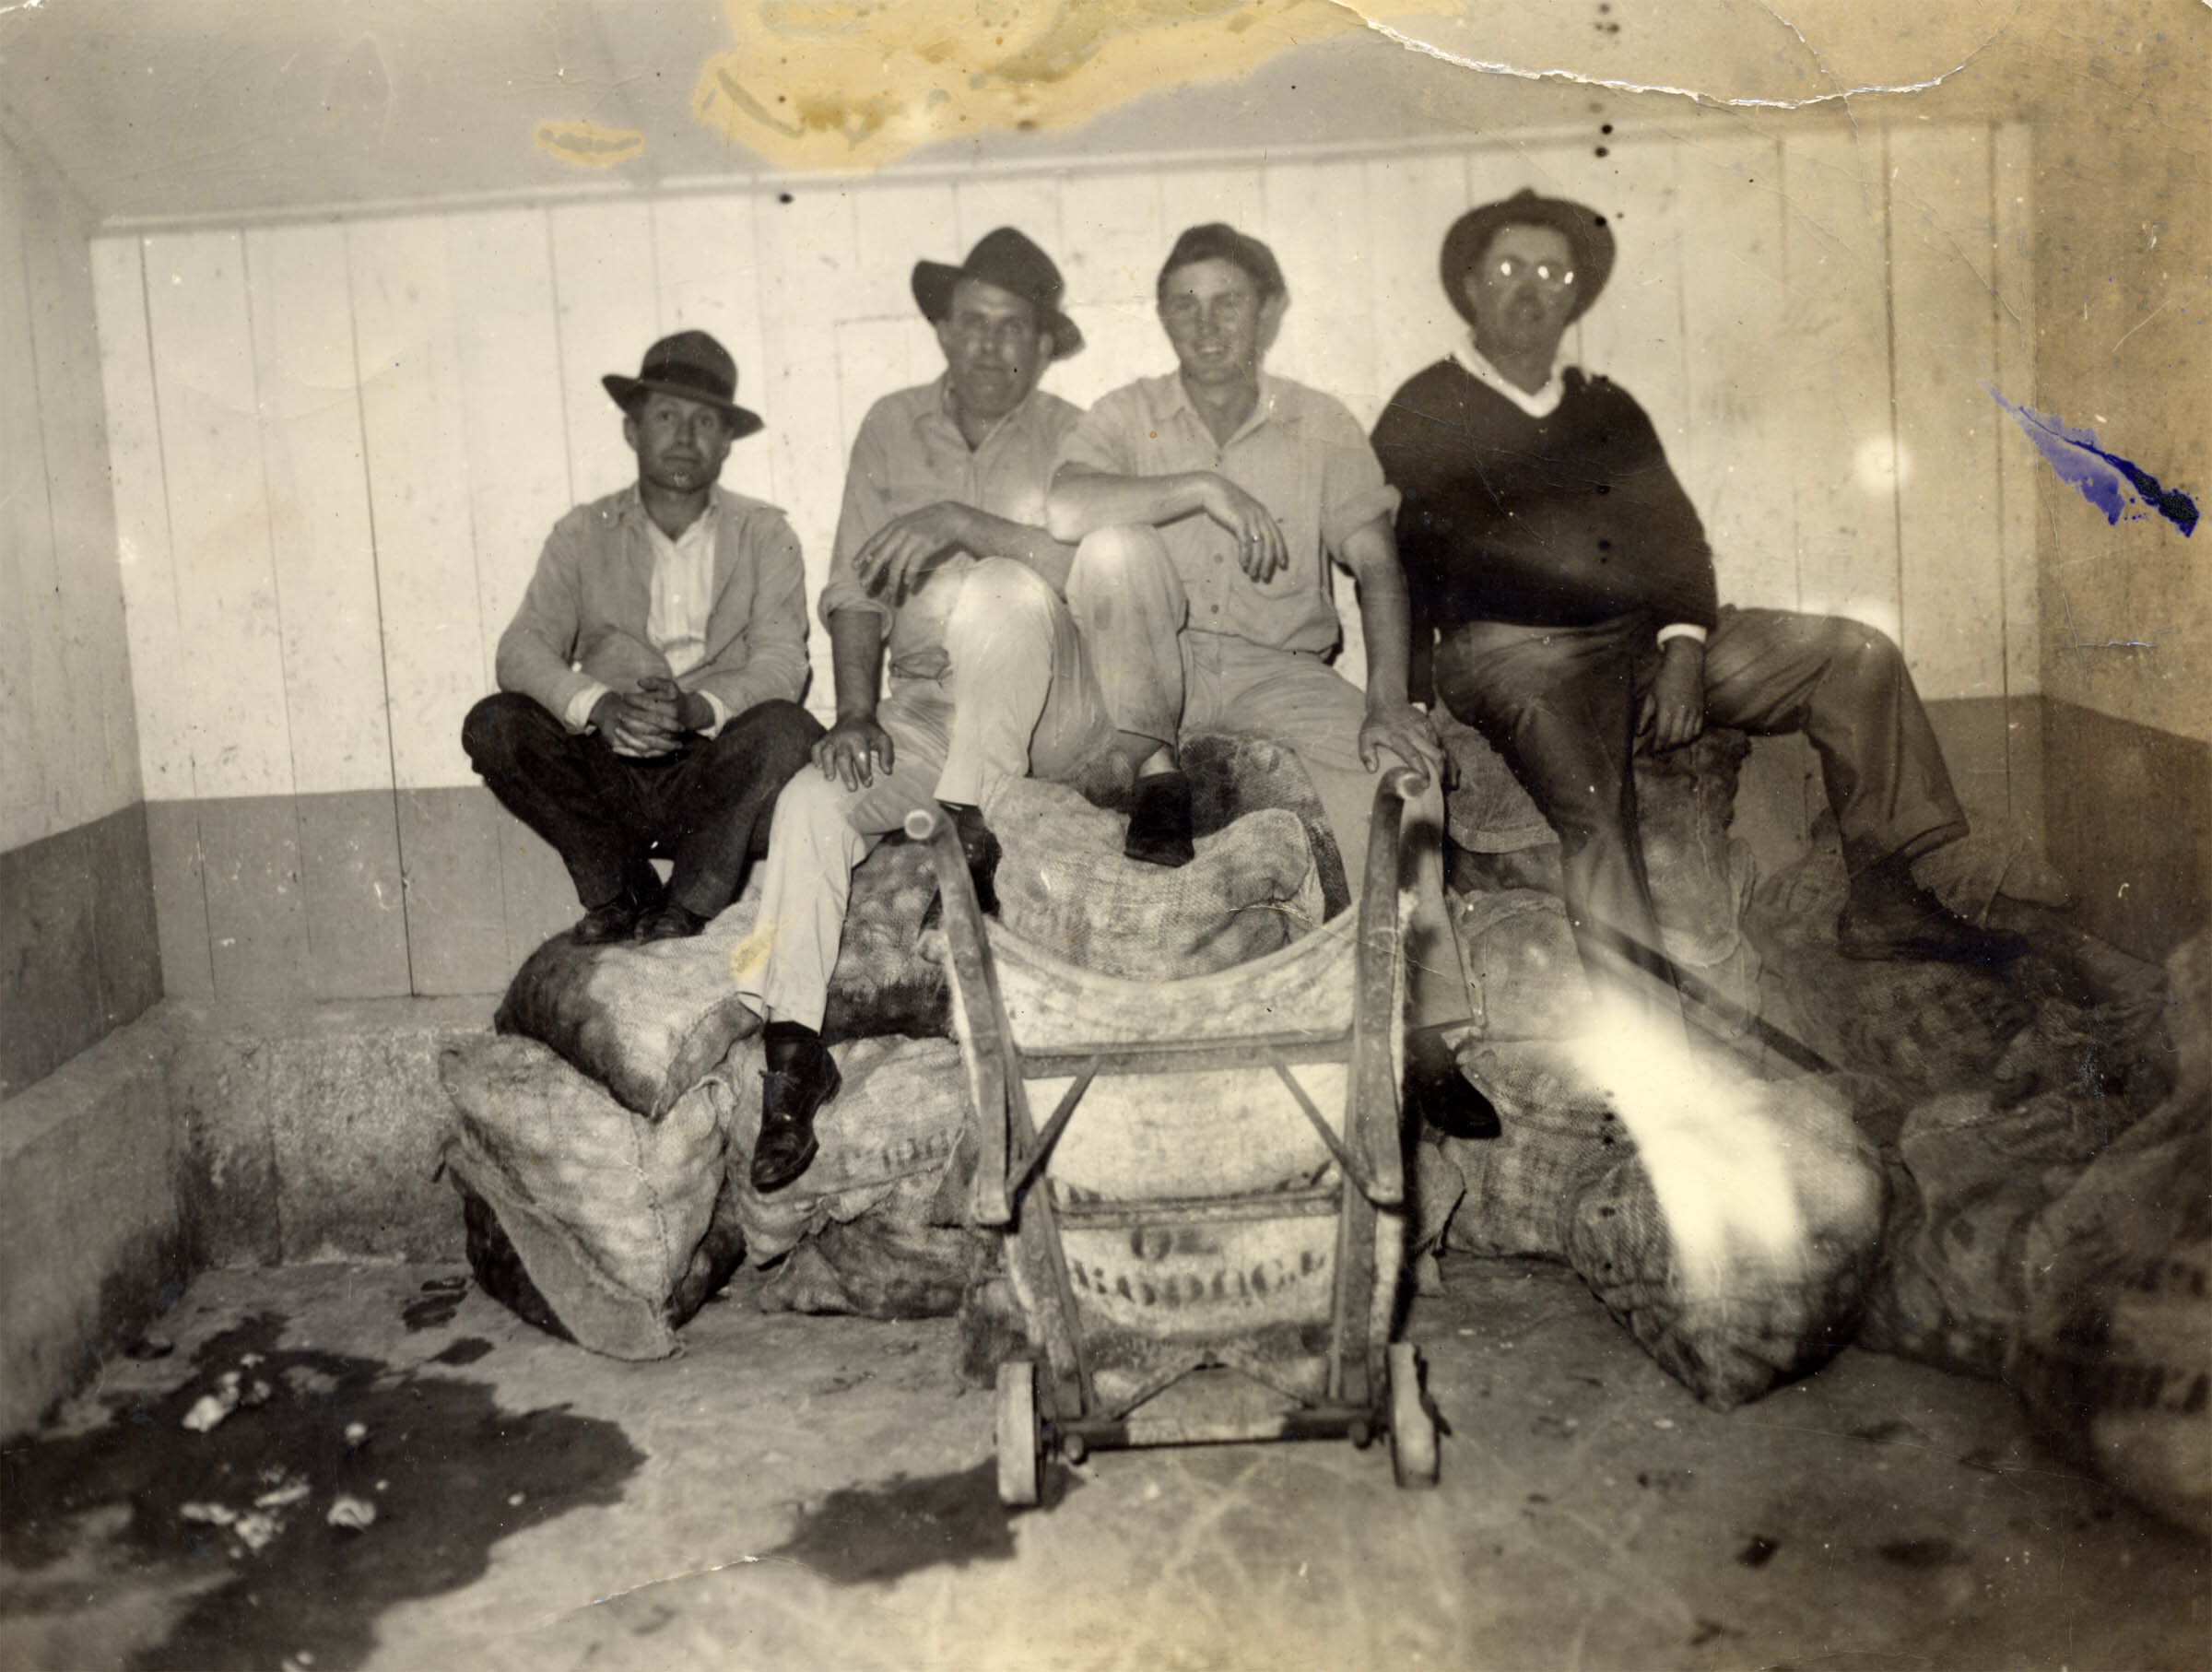 Men sitting on clams in Williston